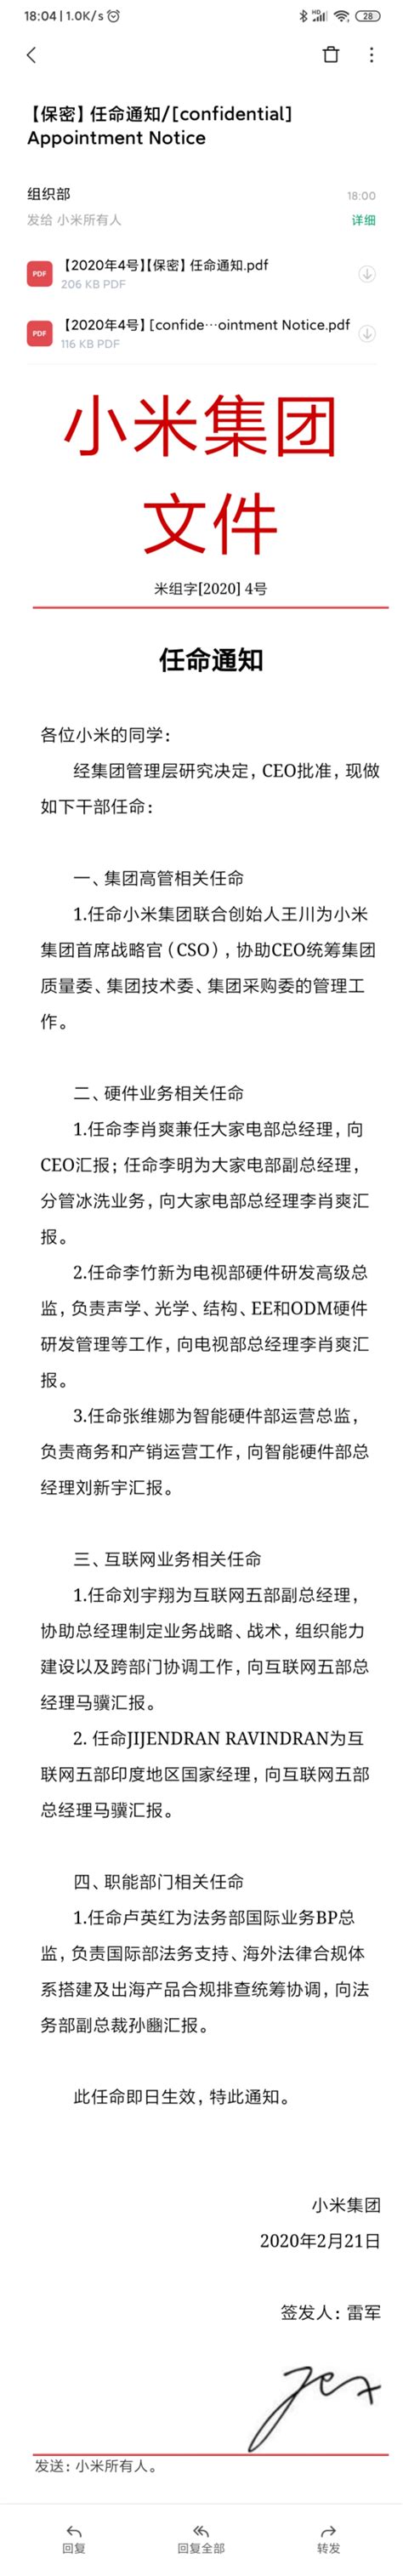 小米宣布重要人事任命 王川担任集团首席战略官_凤凰网科技_凤凰网